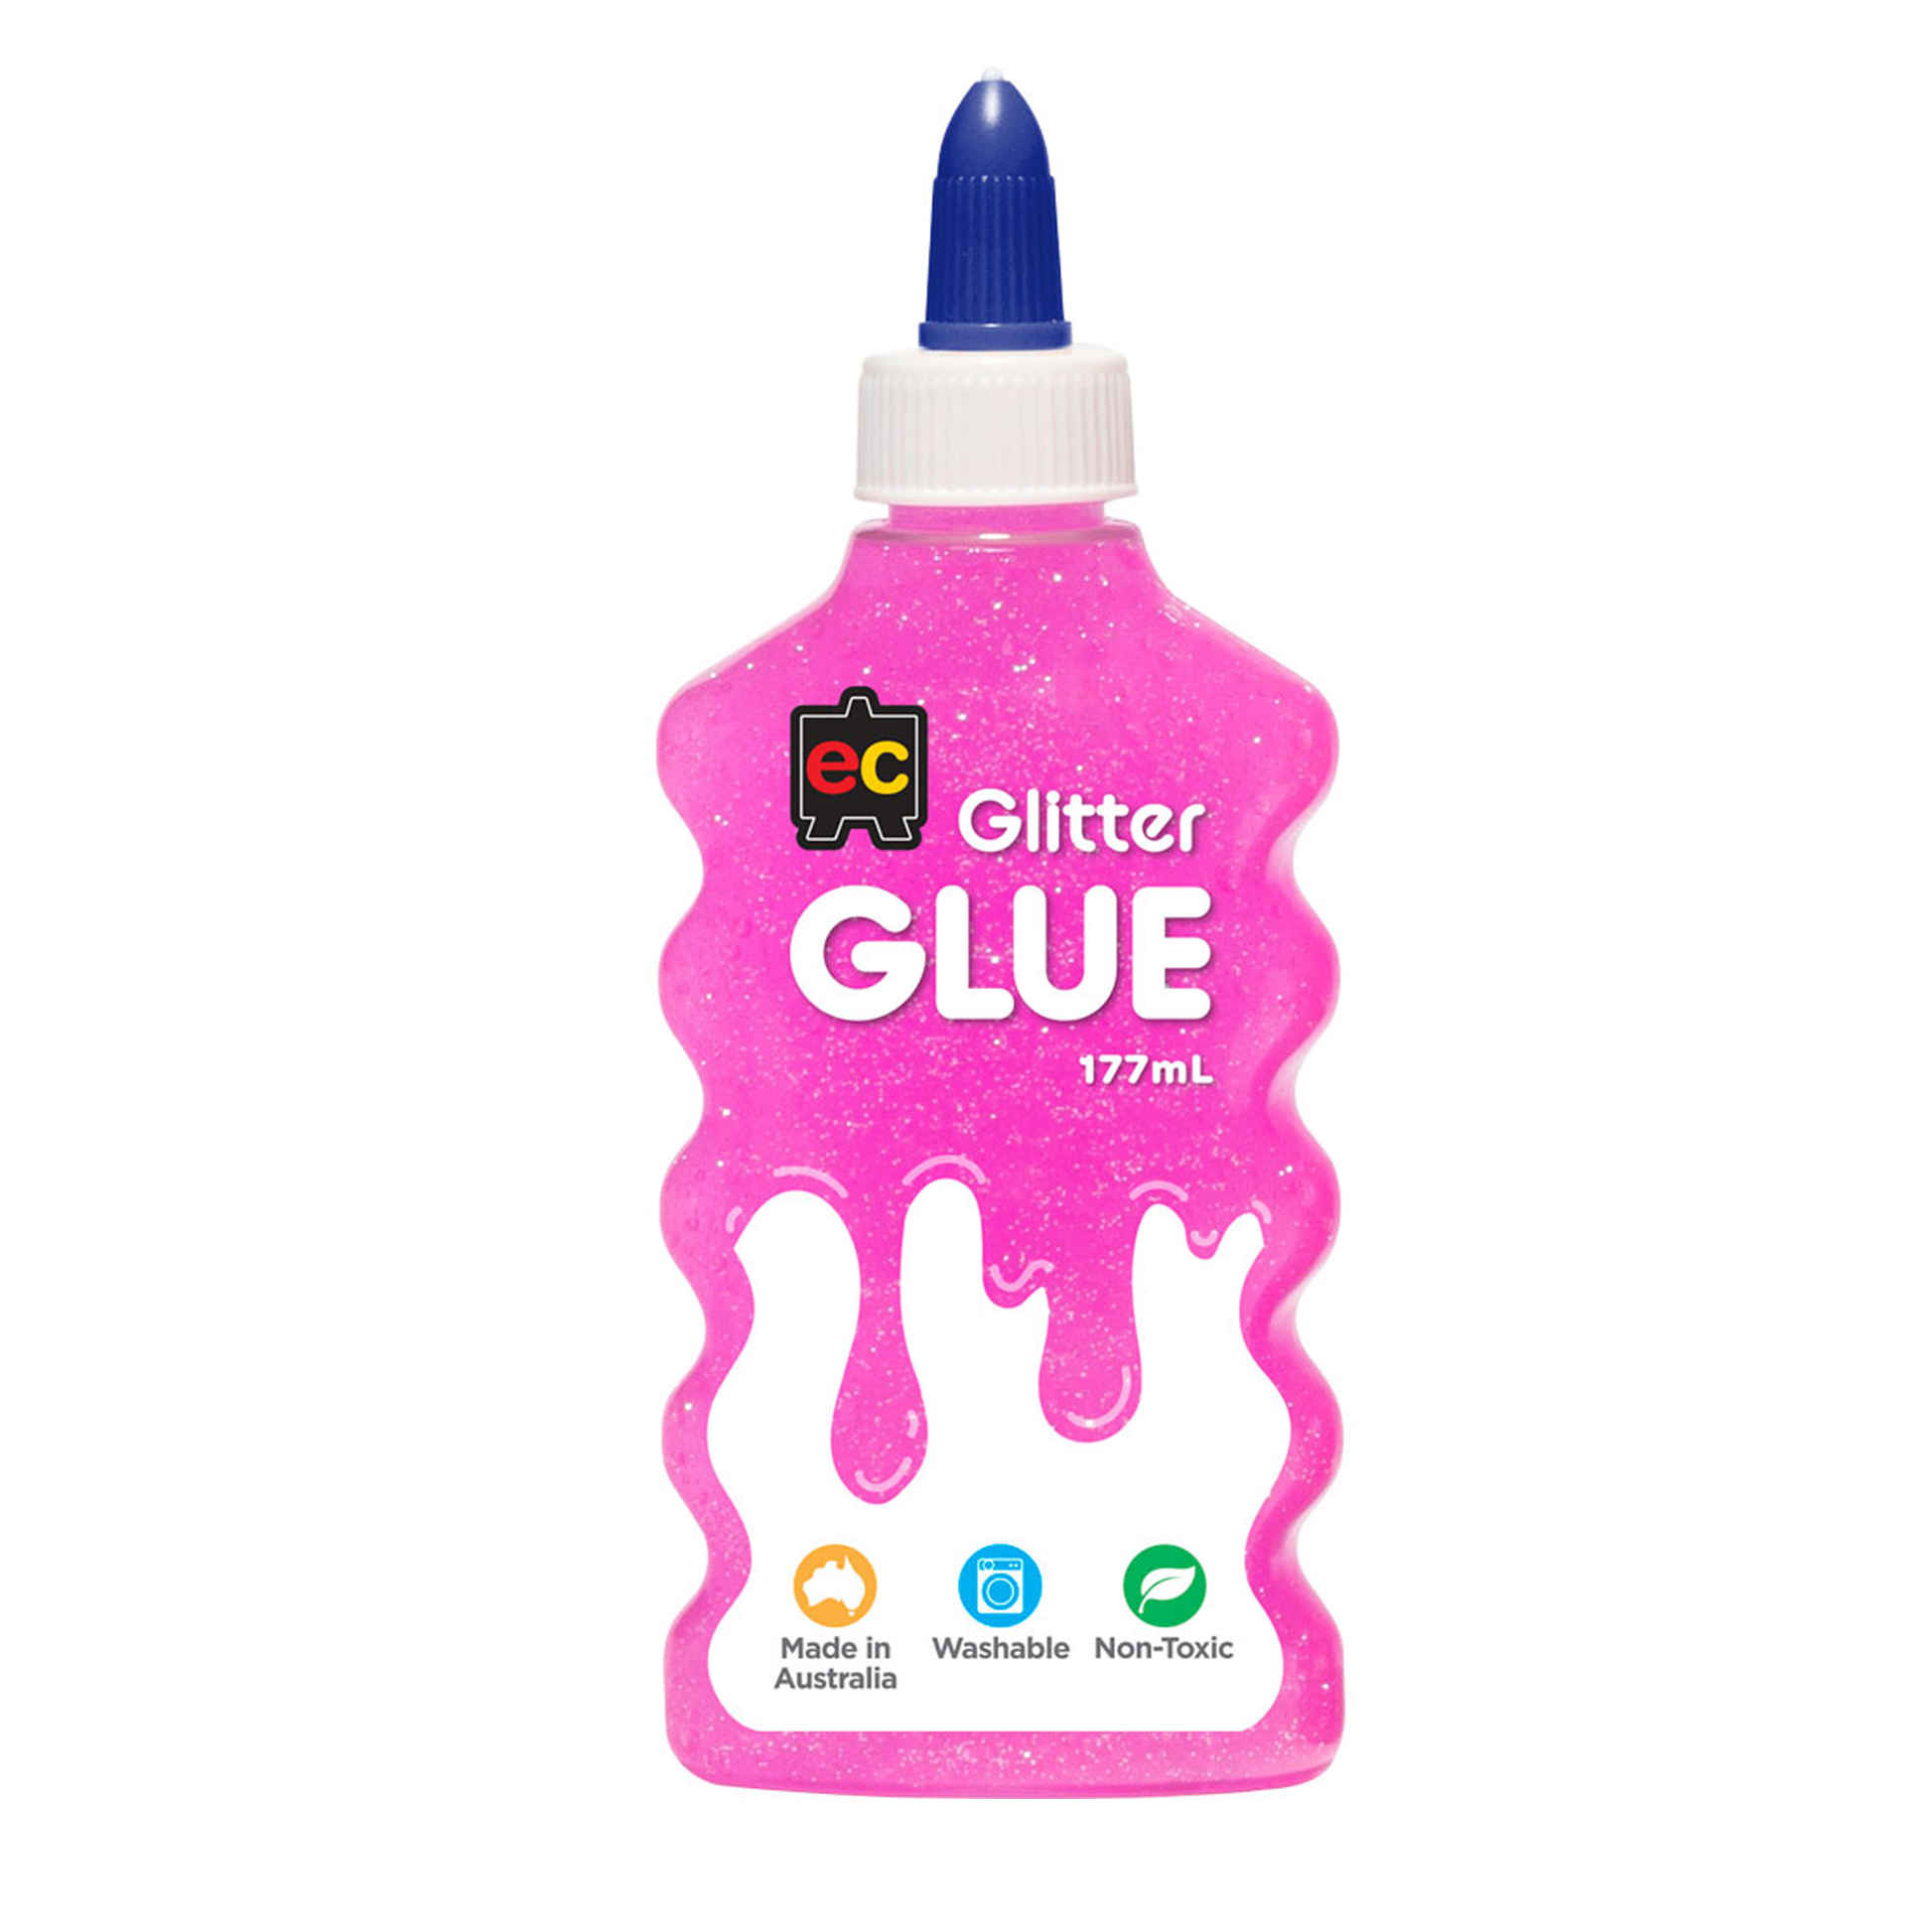 EC Glitter Glue 177ml Pink